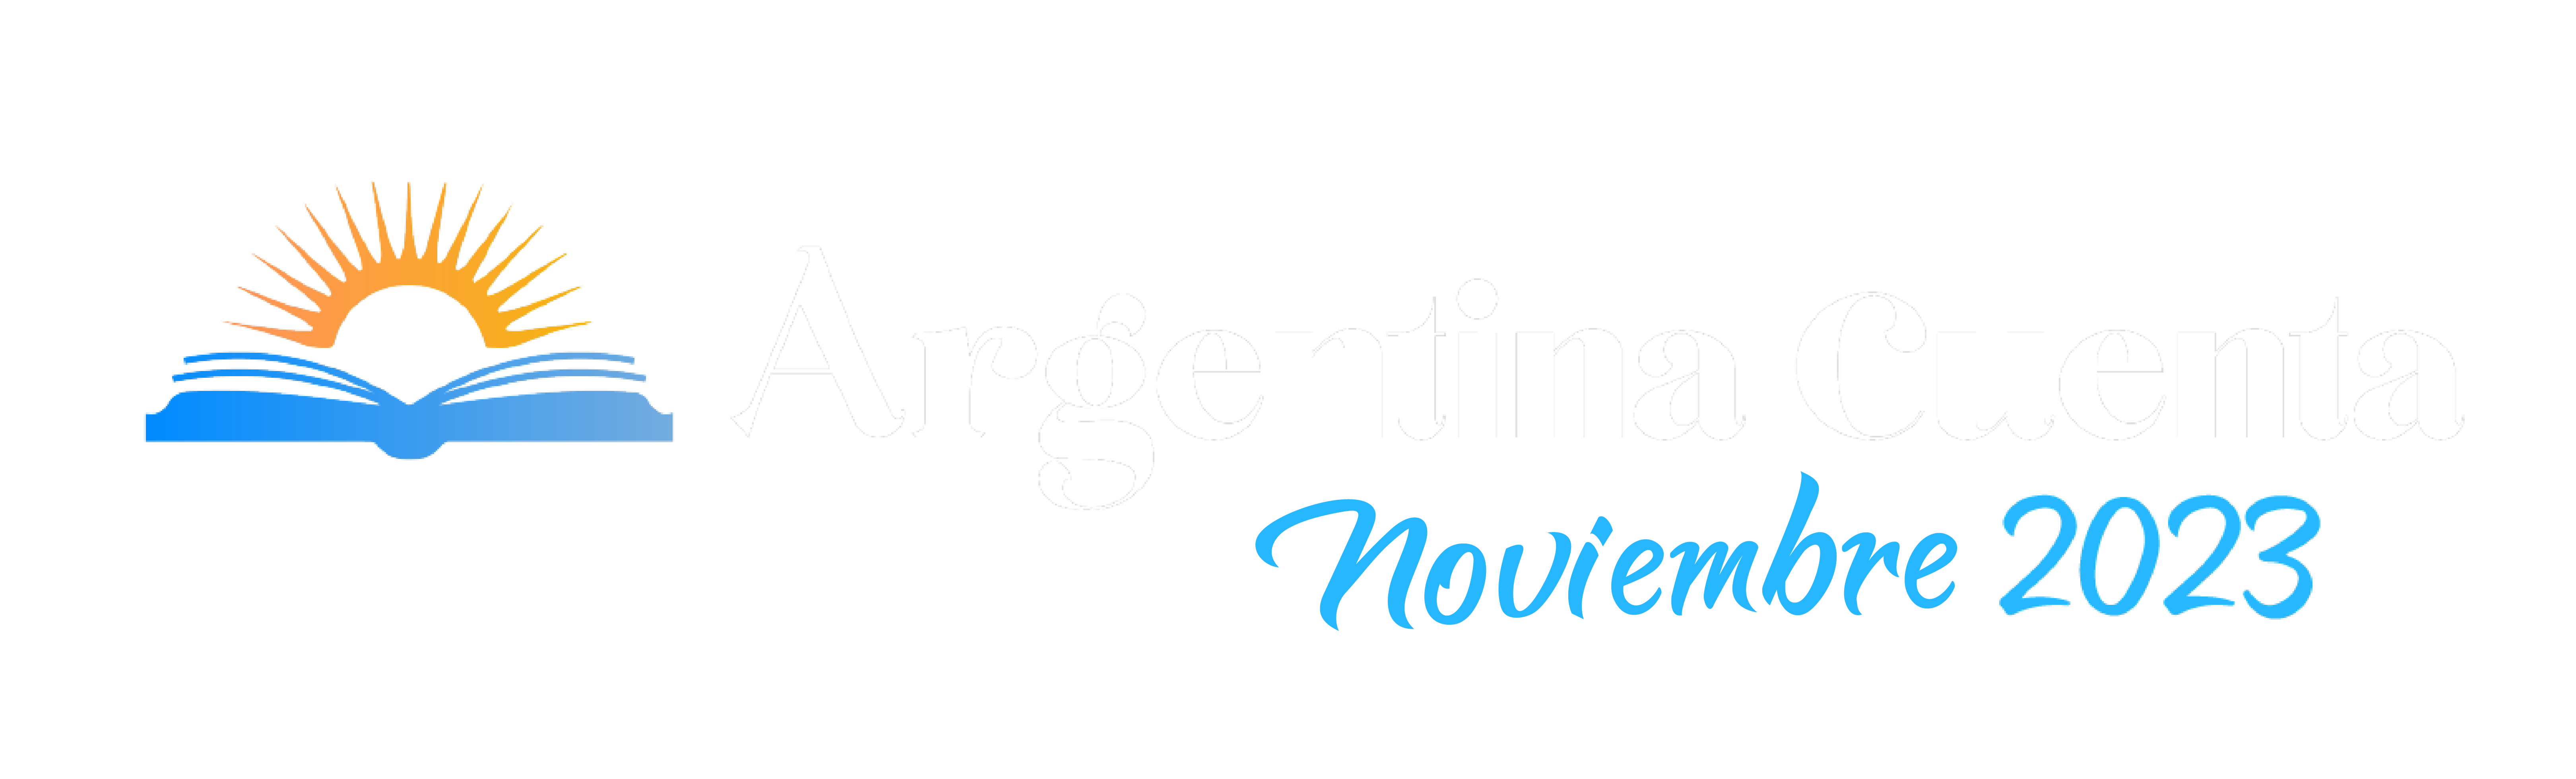 Argentina Cuenta